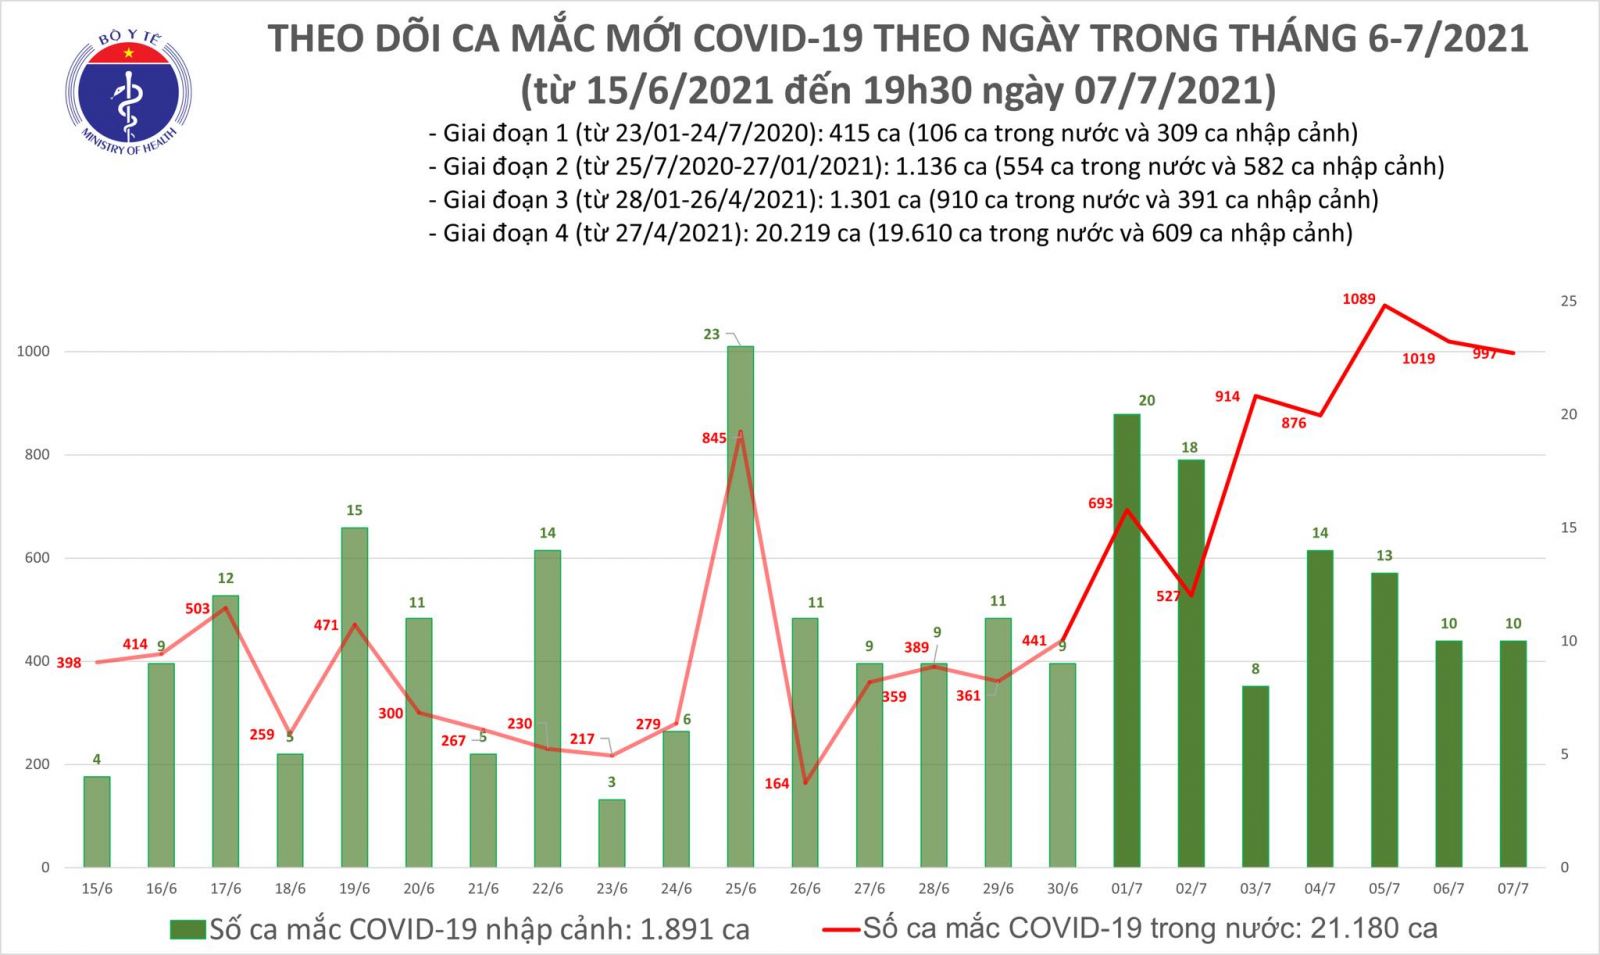 Tối 7/7: Thêm 330 ca mắc COVID-19, nâng tổng số ca trong ngày lên 1.007